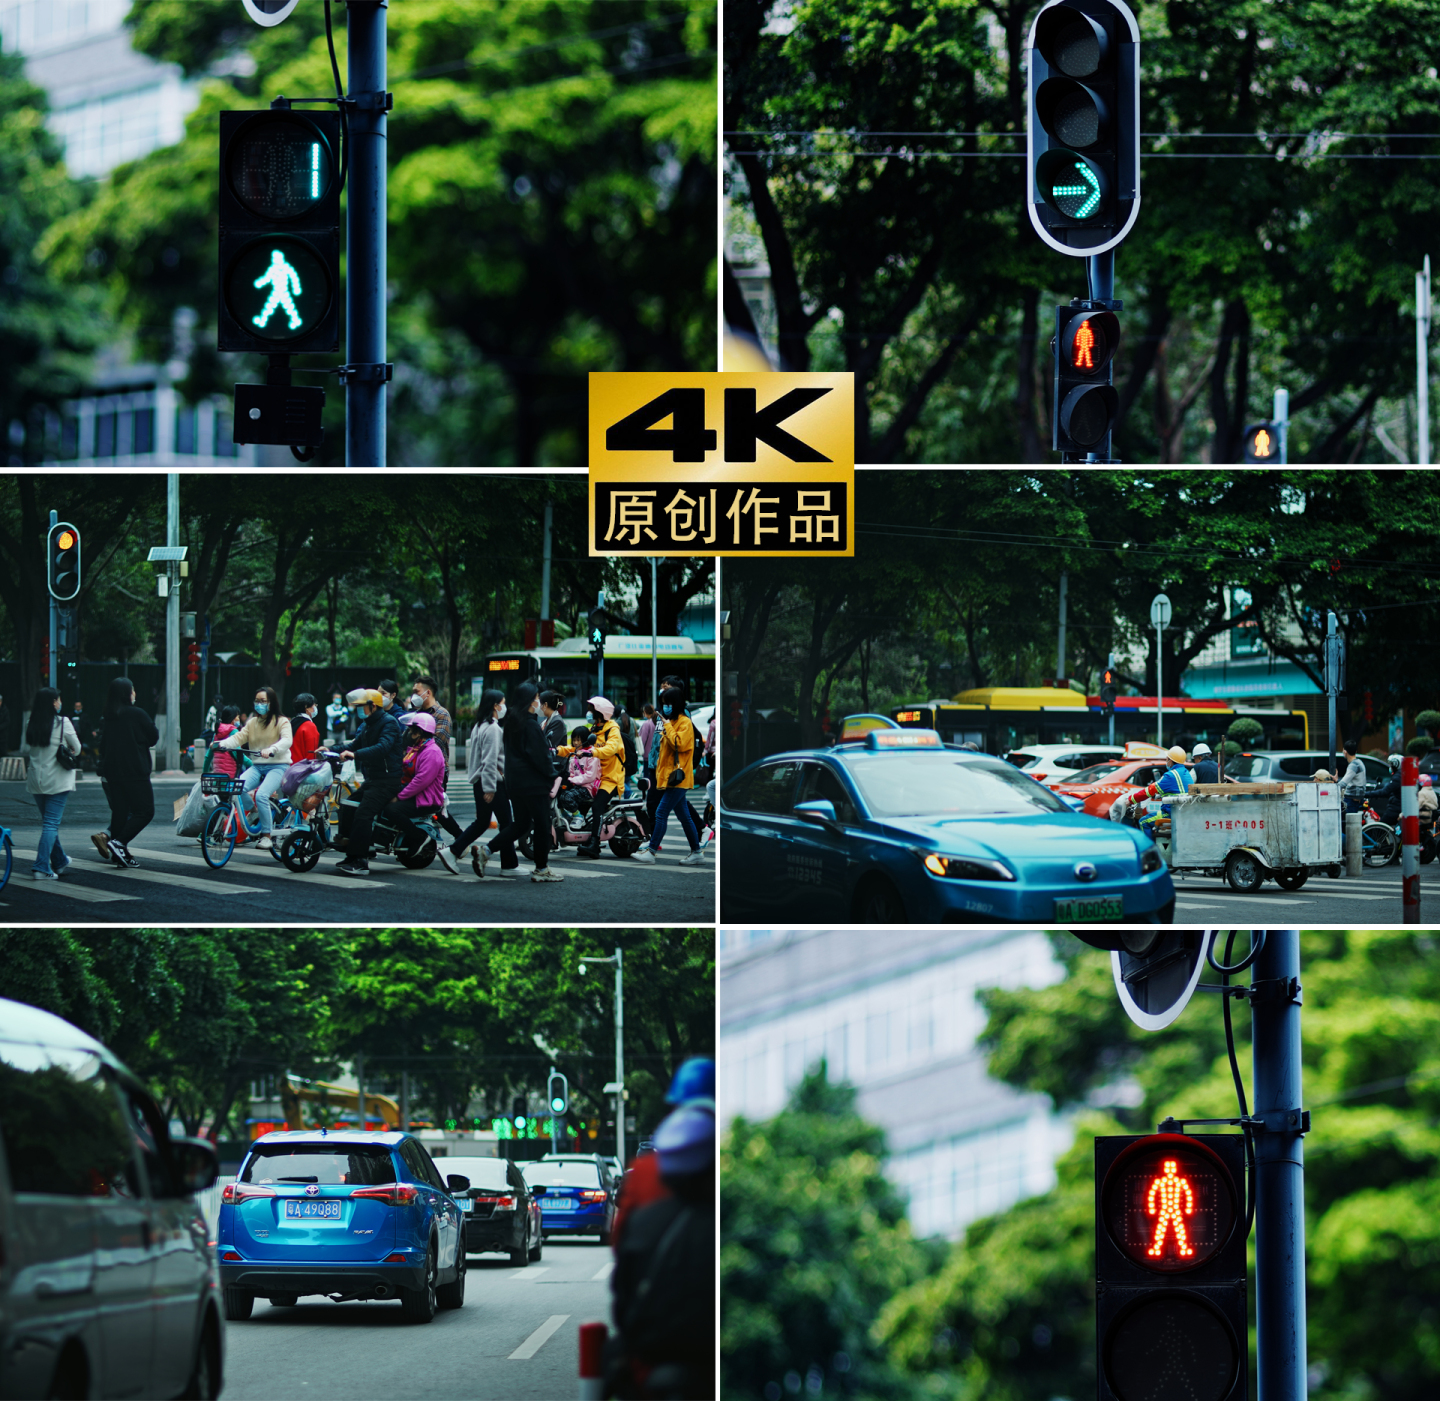 4k红绿灯、斑马线、行人过马路、闯红灯